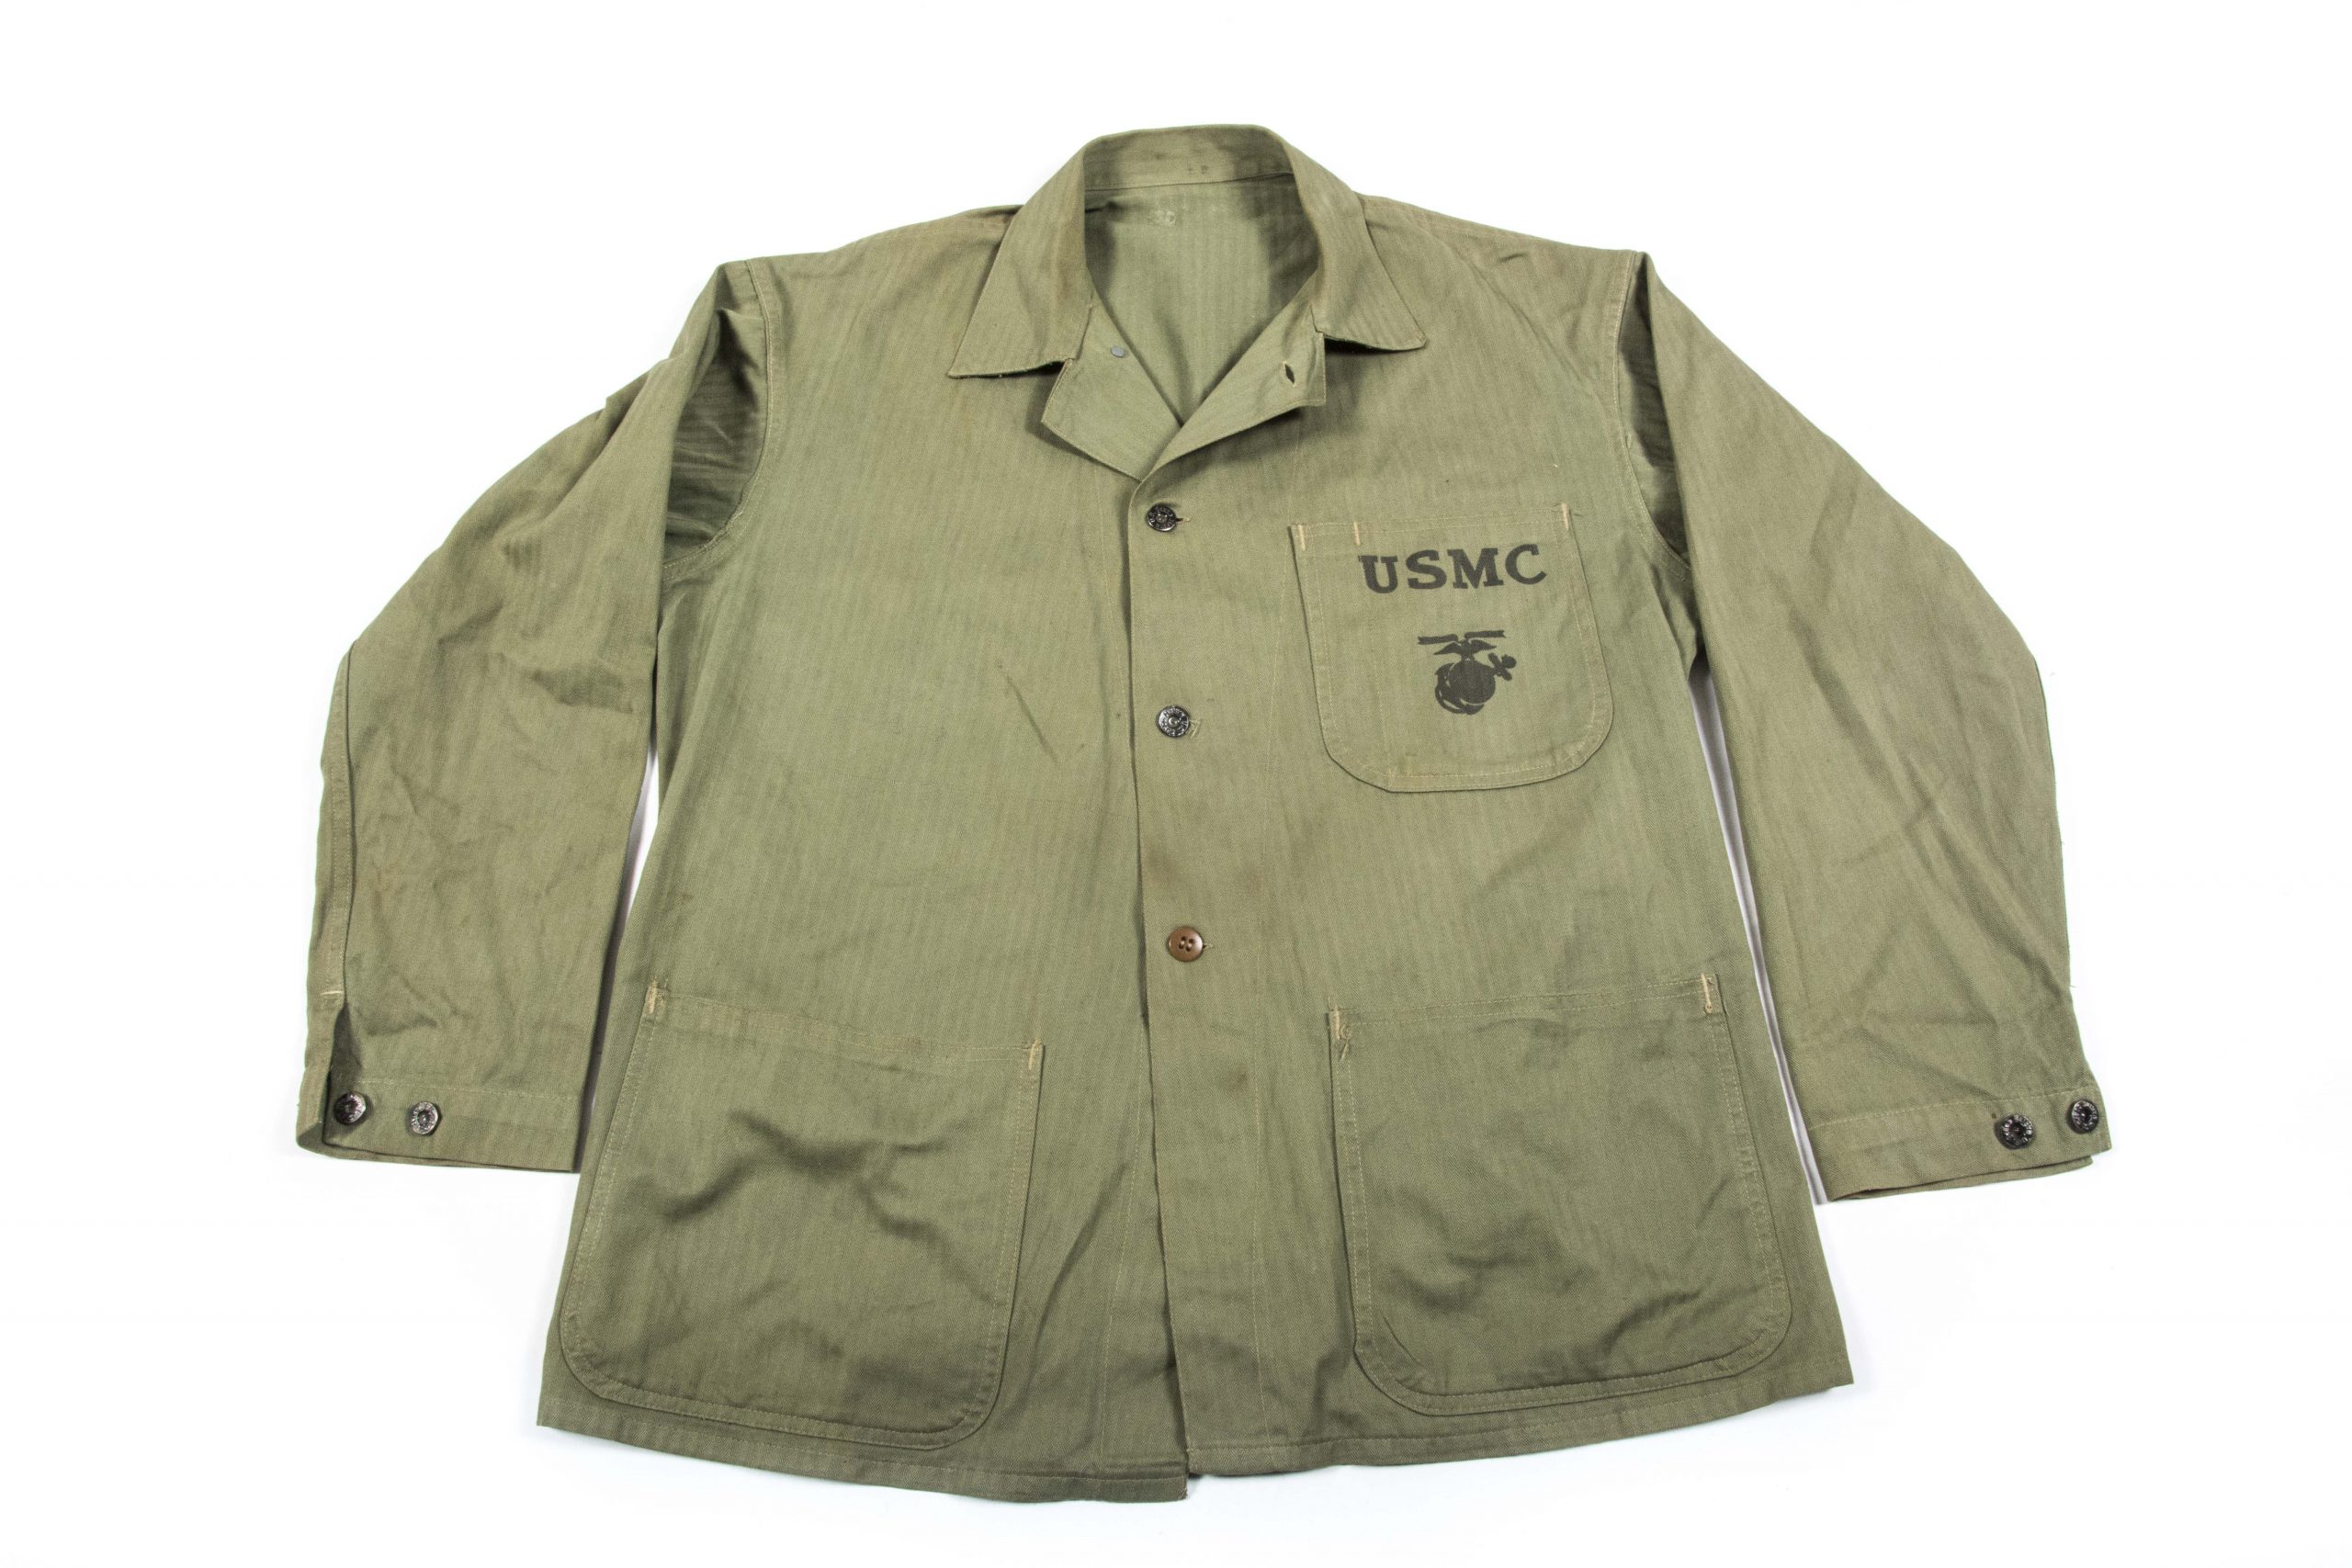 USMC P41 HBT jacket